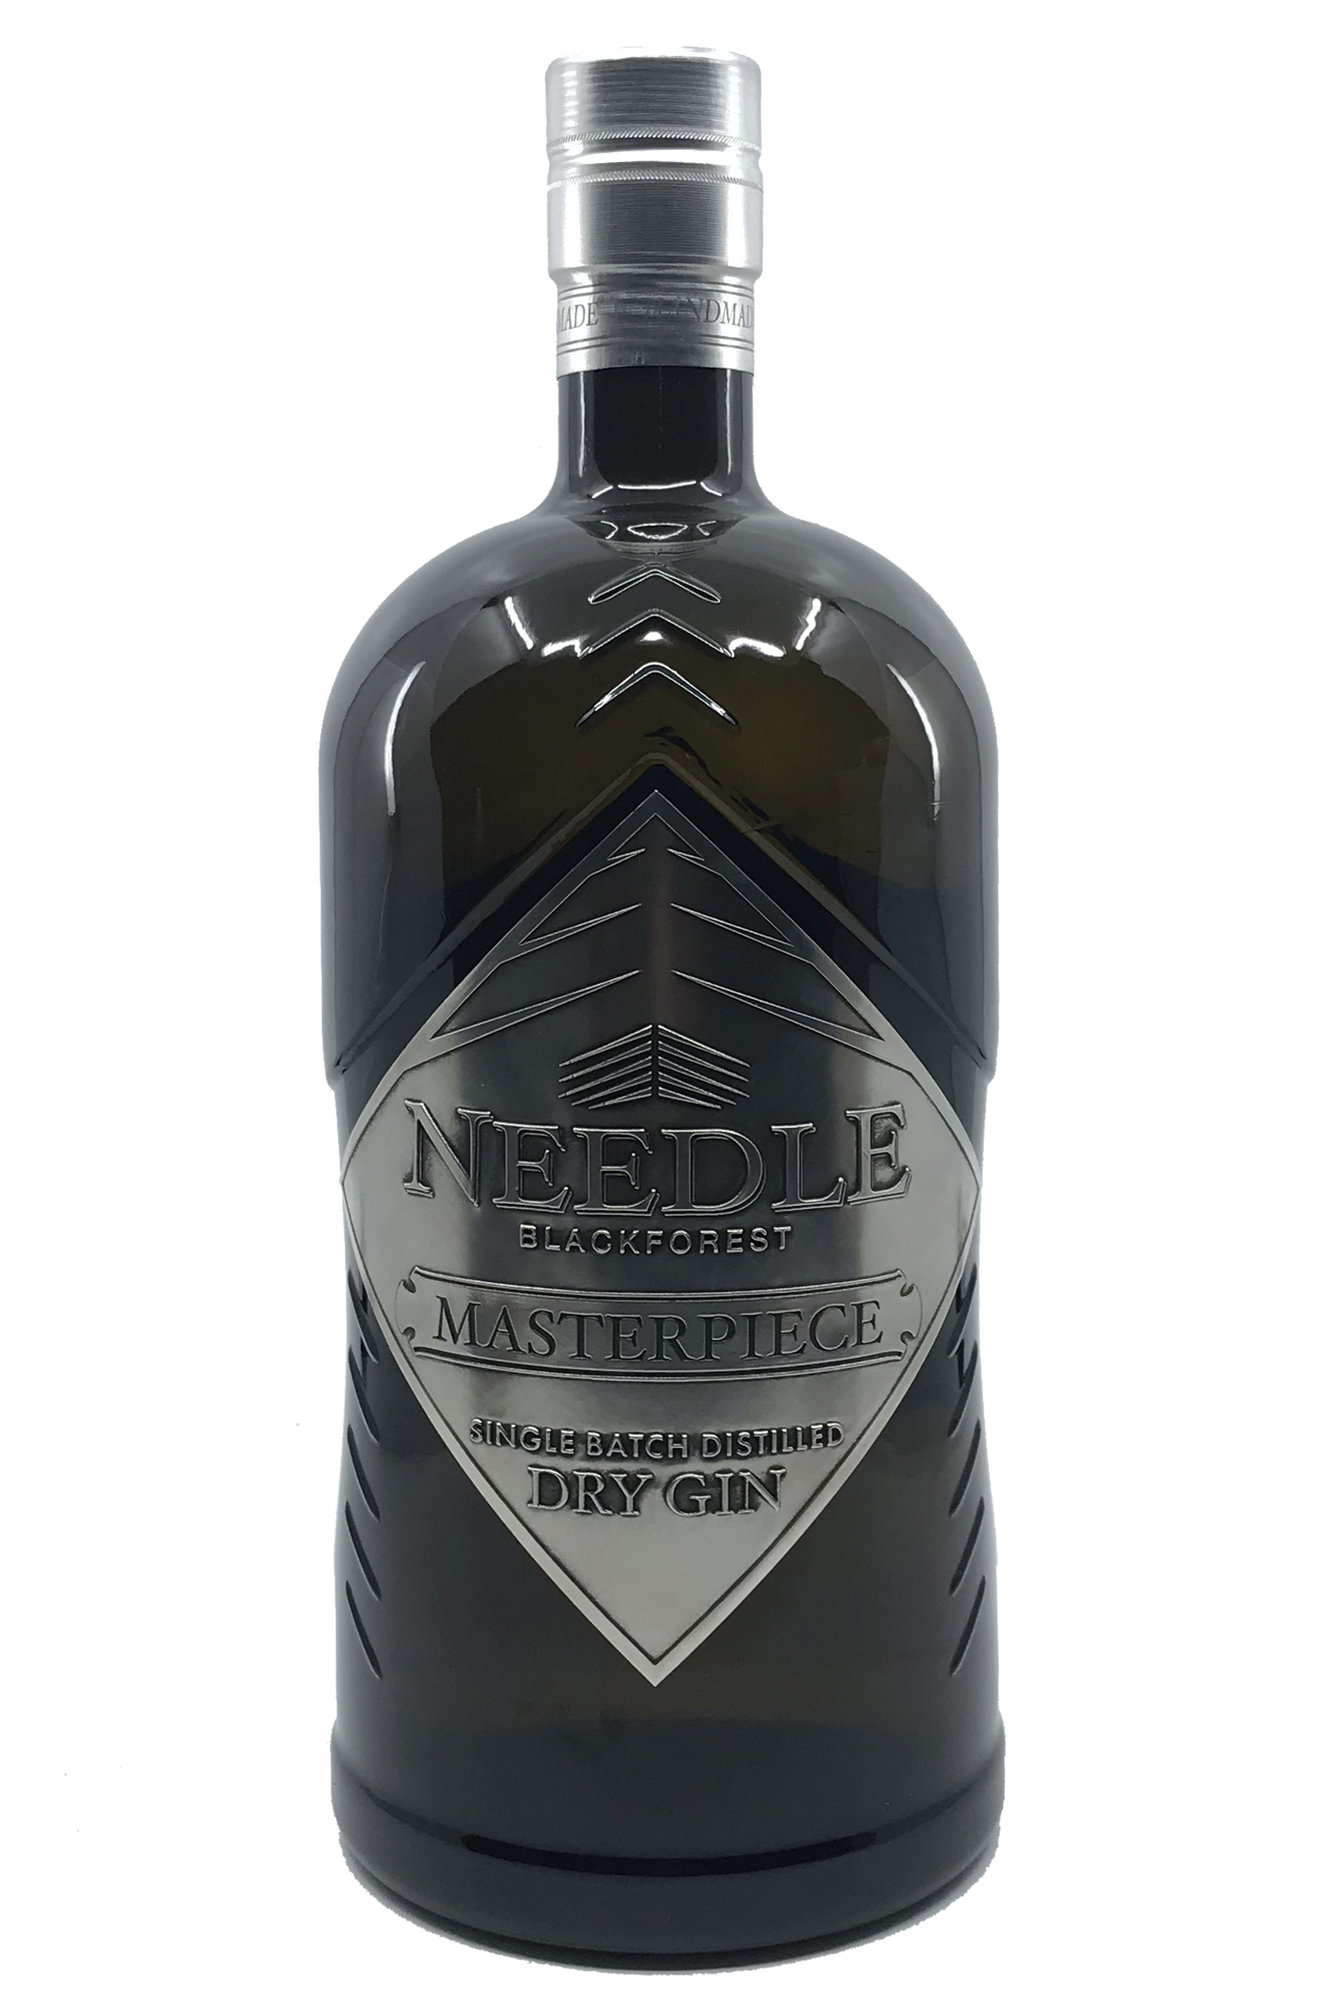 XXL Needle Blackforest - Dry Gin - Masterpiece - 3 Liter 45% vol. Alk.